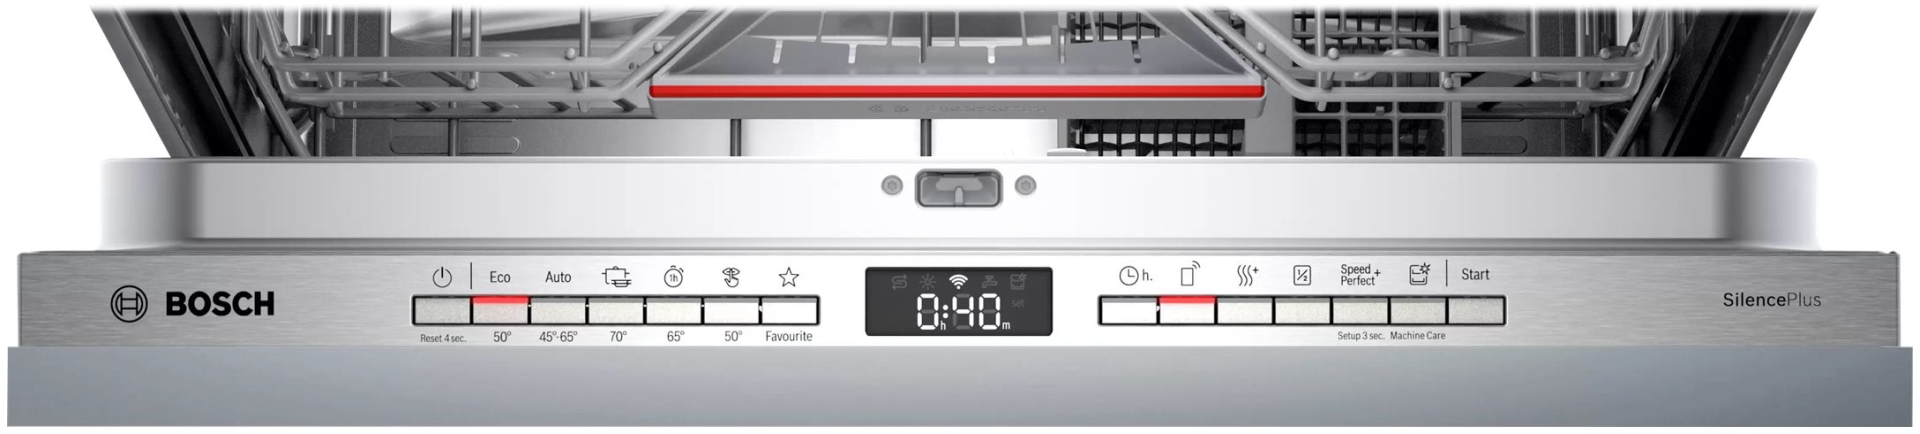 4242005189779 Bosch SMV4HAX48E - Integrerbar opvaskemaskine Hvidevarer,Opvaskemaskine,Opvaskemaskiner til integrering 1400009560 SMV4HAX48E